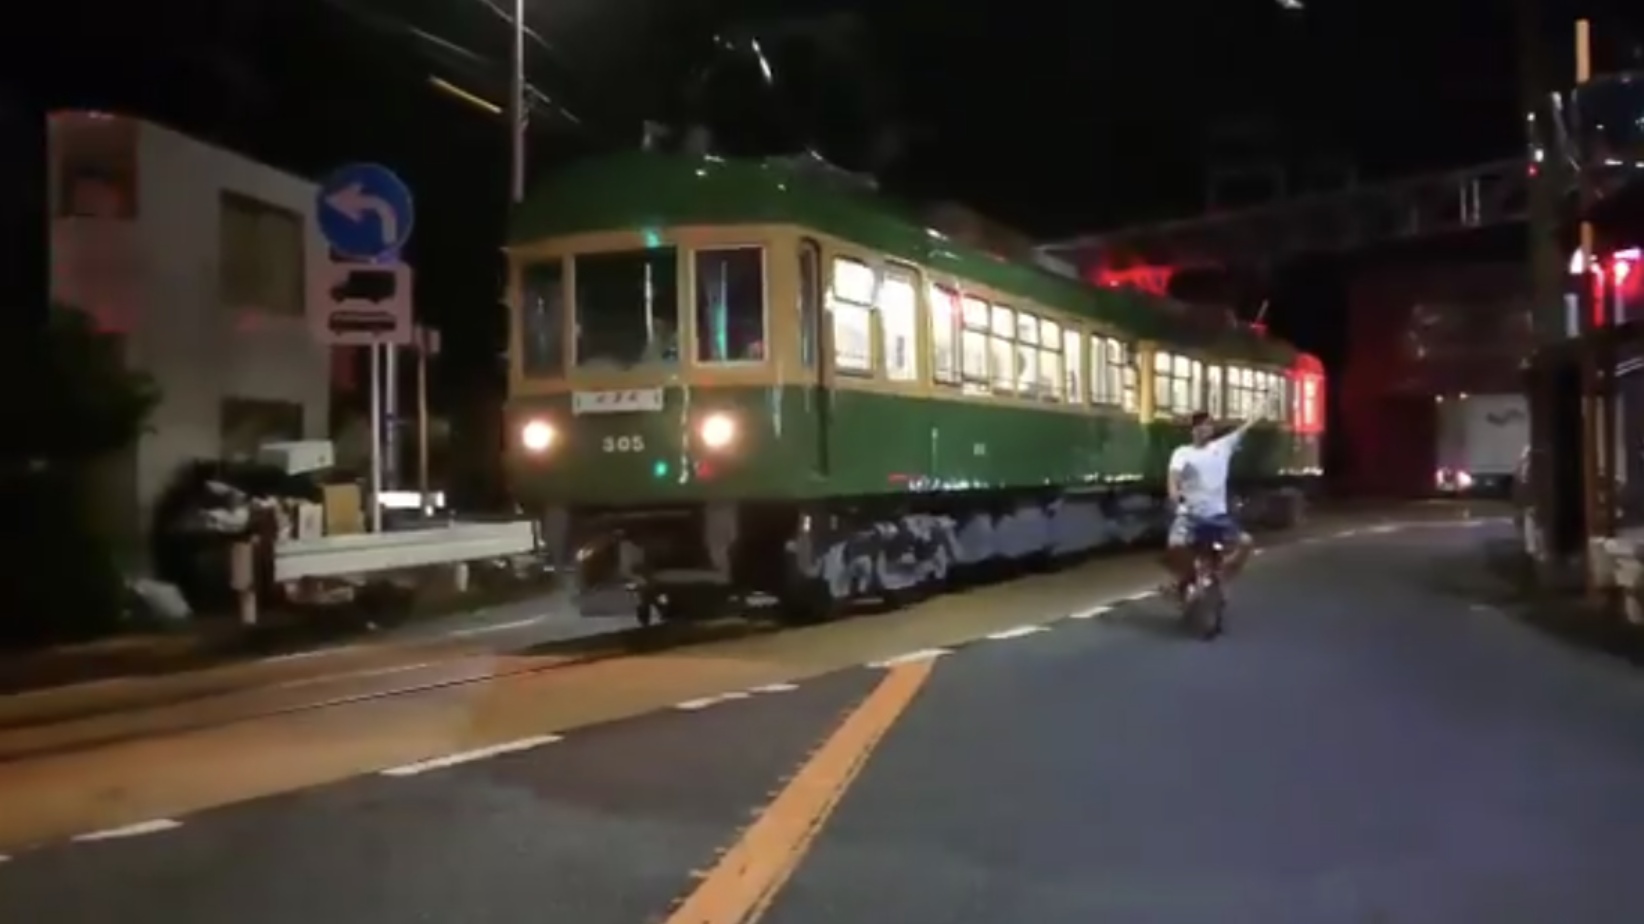 ｢江ノ電自転車ニキ｣は偶然通りかかった地元民だった 鉄道ファンによる誹謗中傷や押しかけ多発